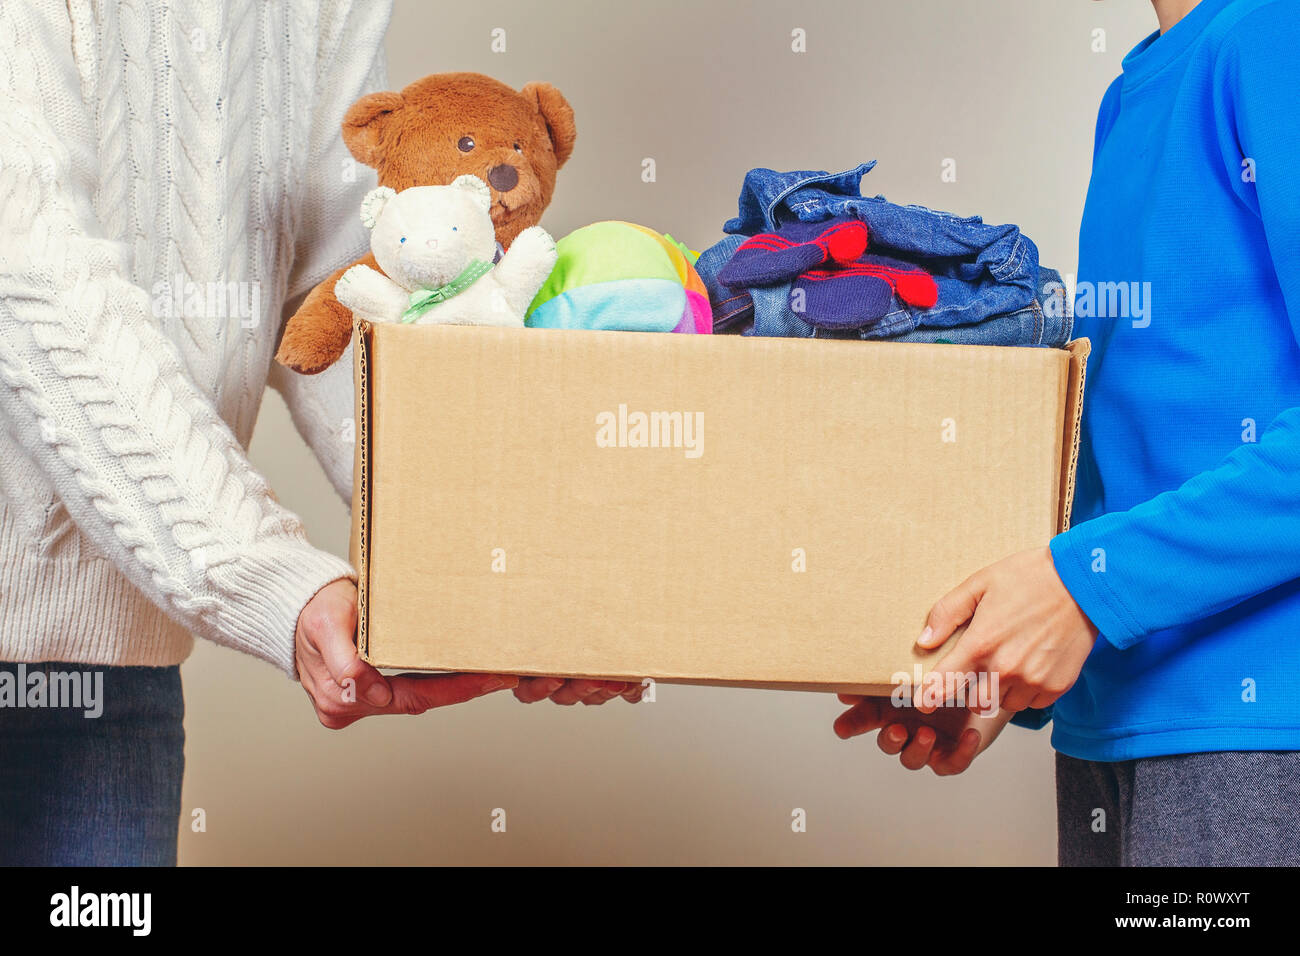 Concetto di donazione. Donare il box con abiti, libri e giocattoli nei membri della famiglia mano Foto Stock